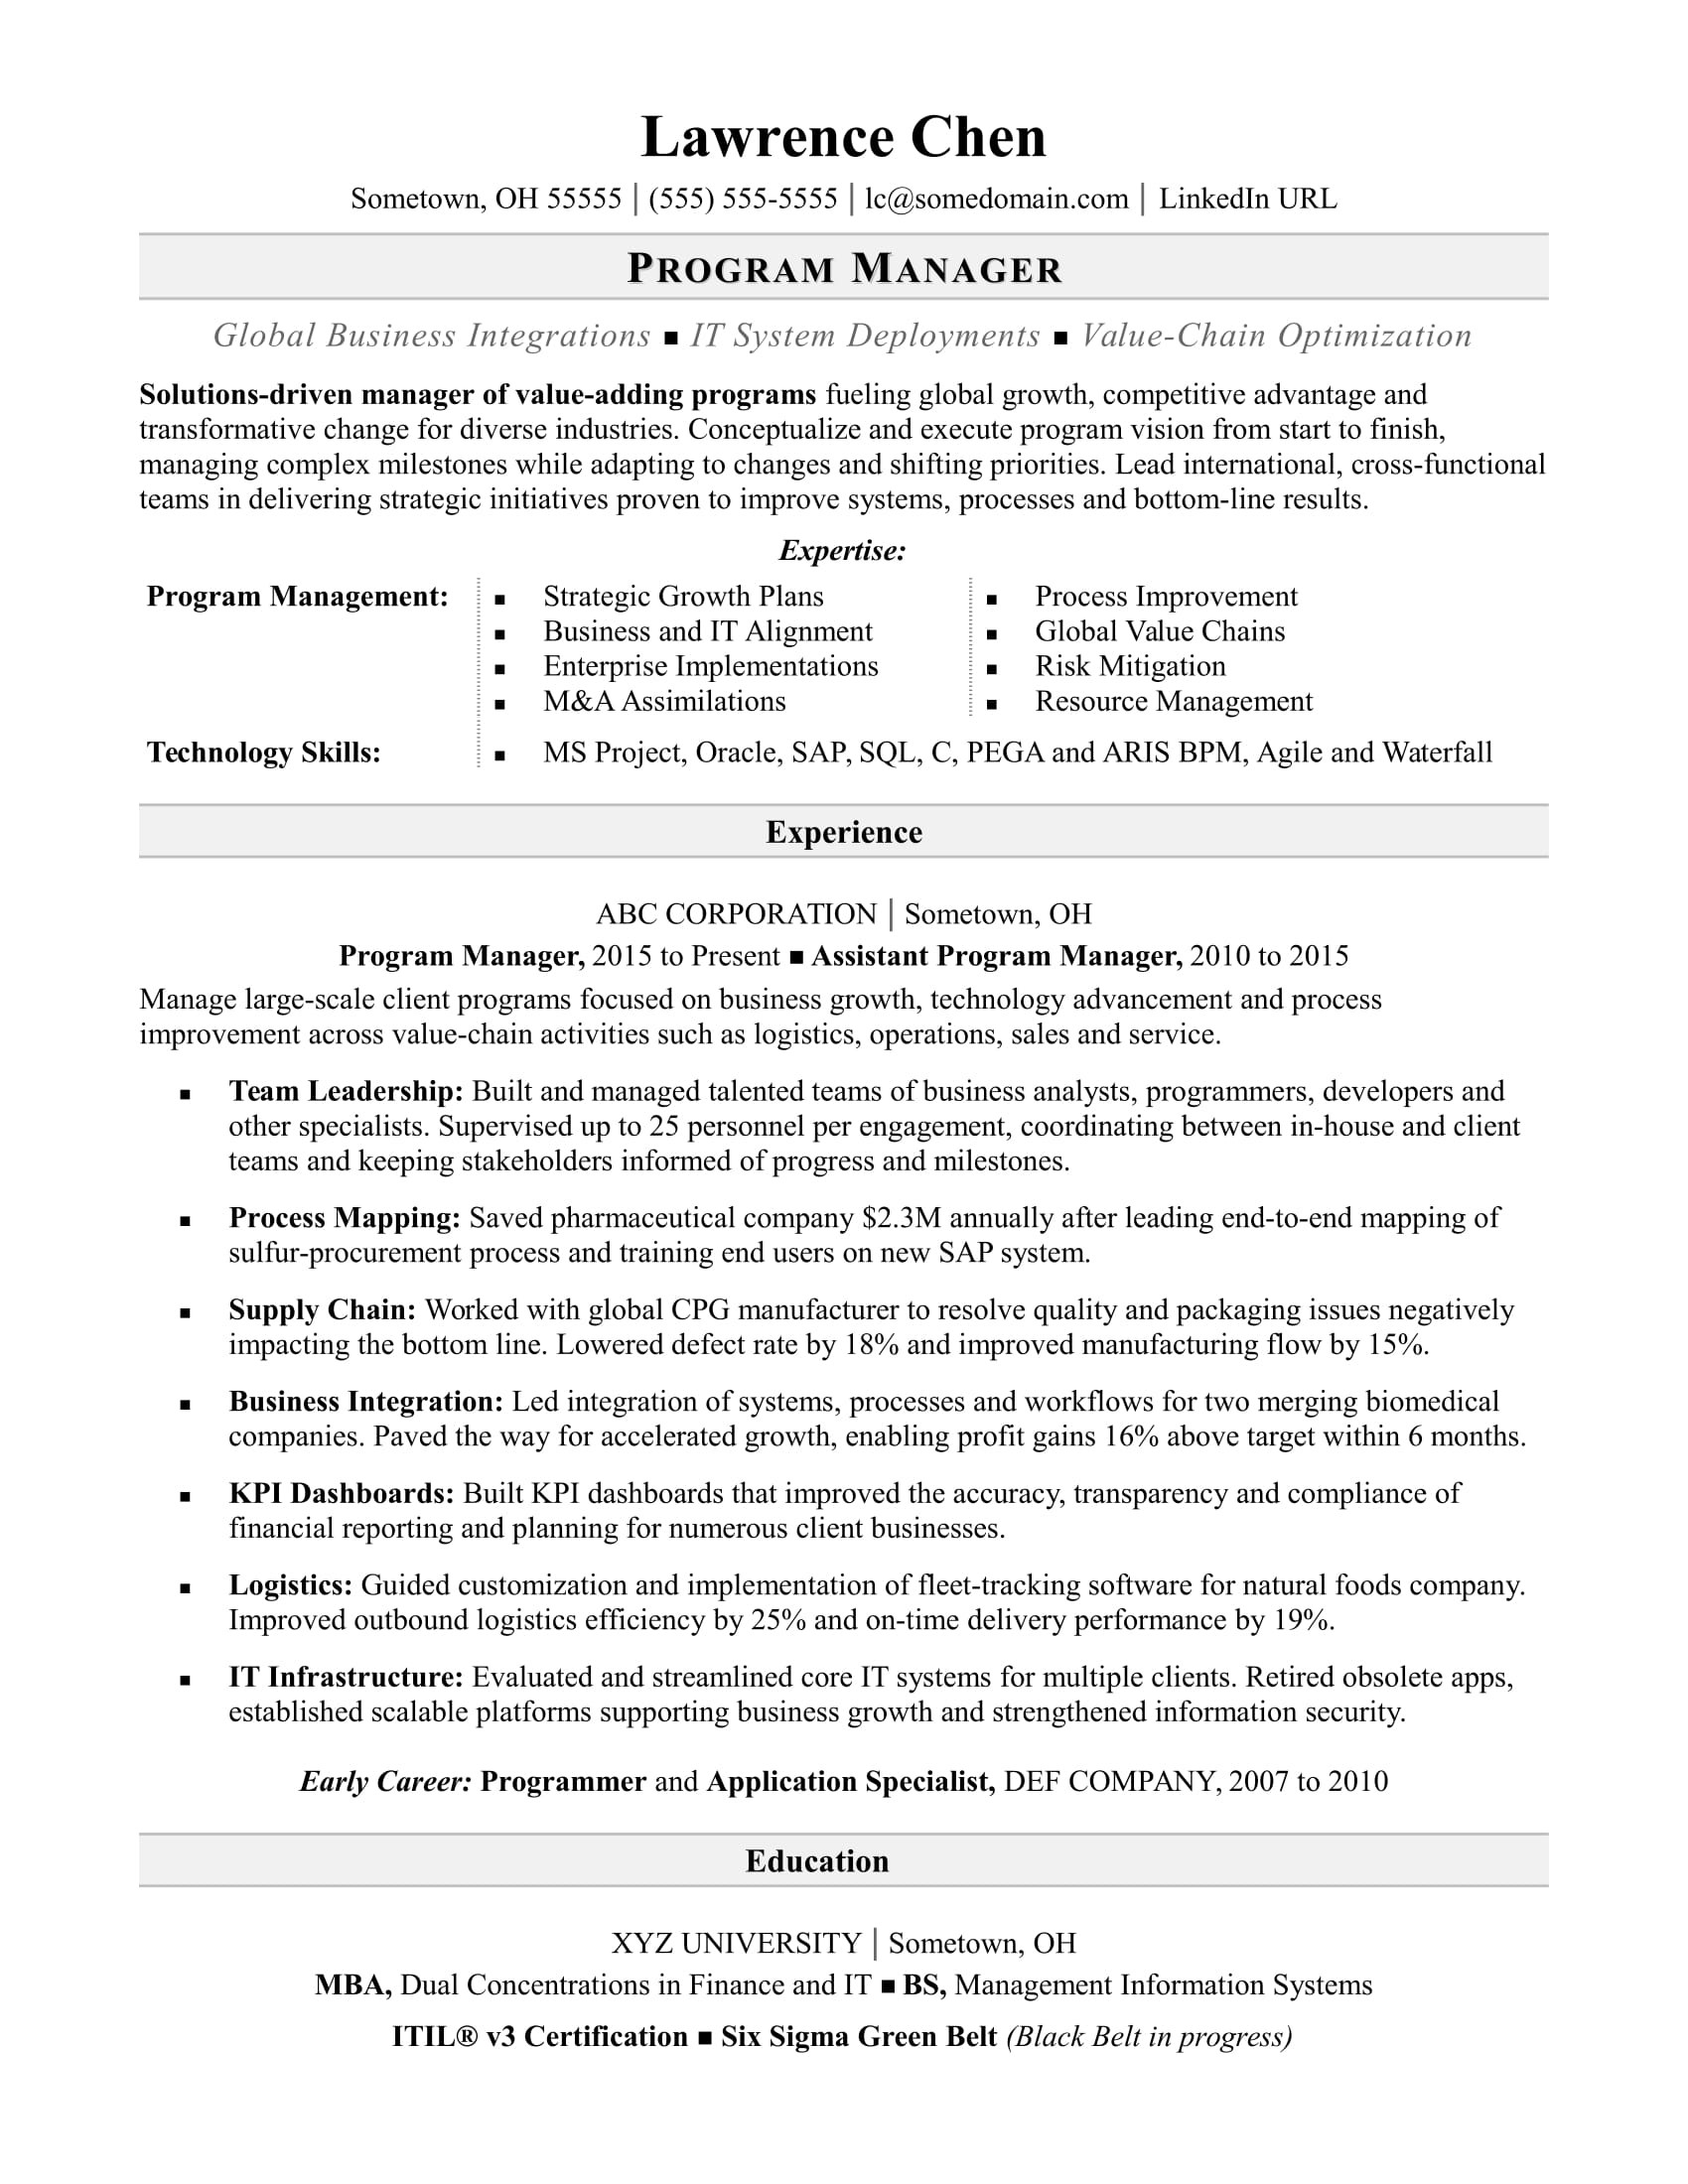 Sample Resume for Senior Center Director Program Manager Resume Monster.com